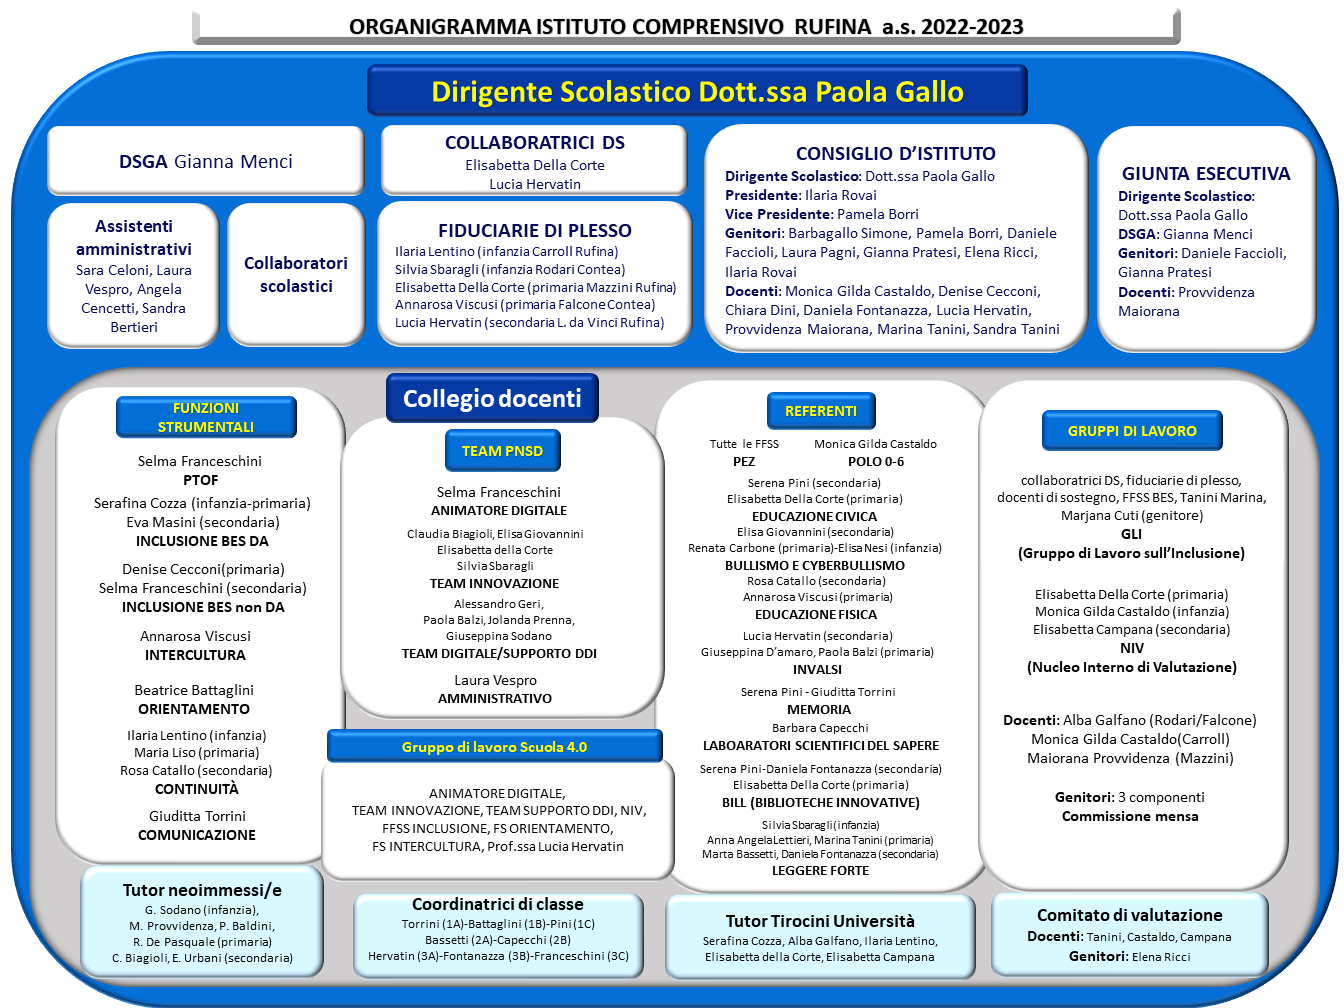 Organigramma A.S. 2022-2023 - disponibile versione PDF al link sottostante